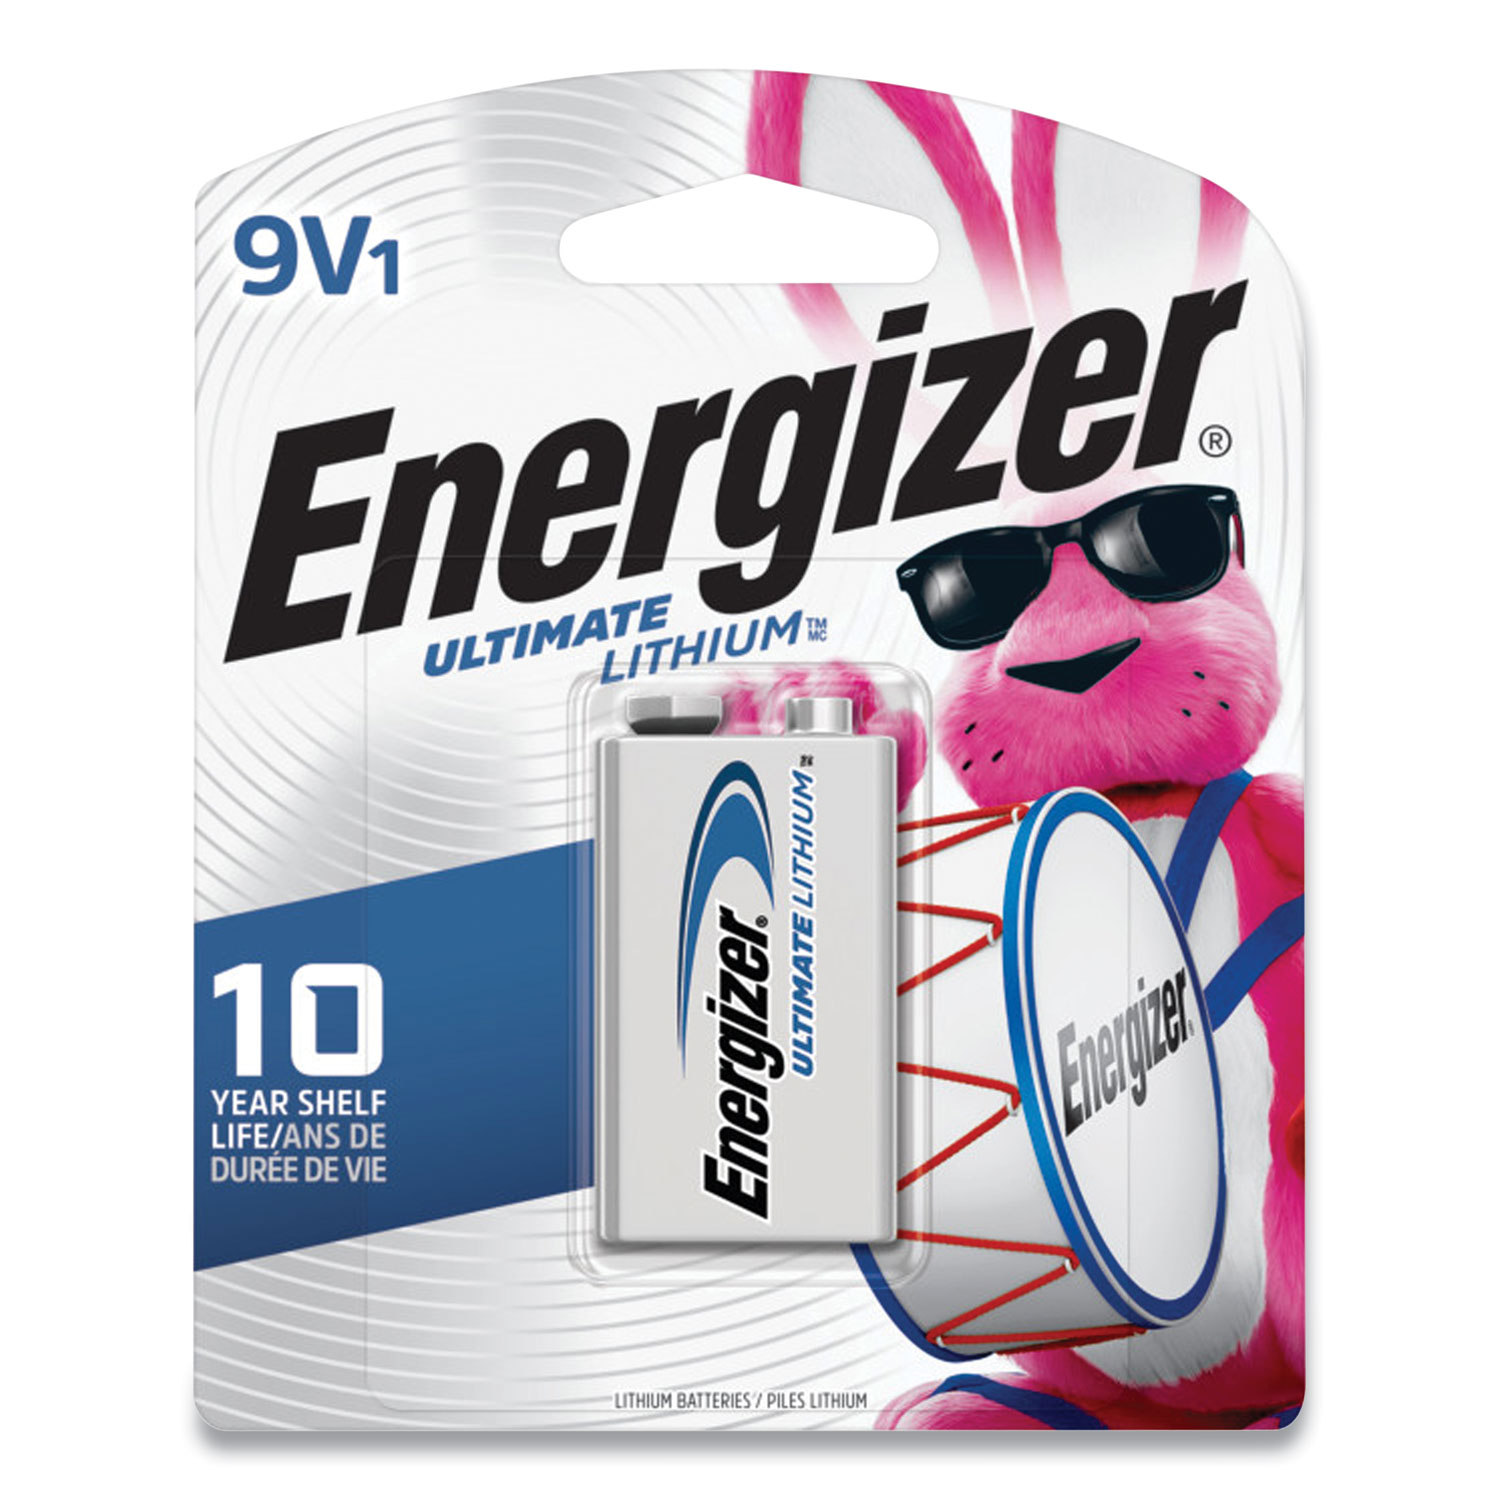 Energizer® Ultimate Lithium 9V Batteries